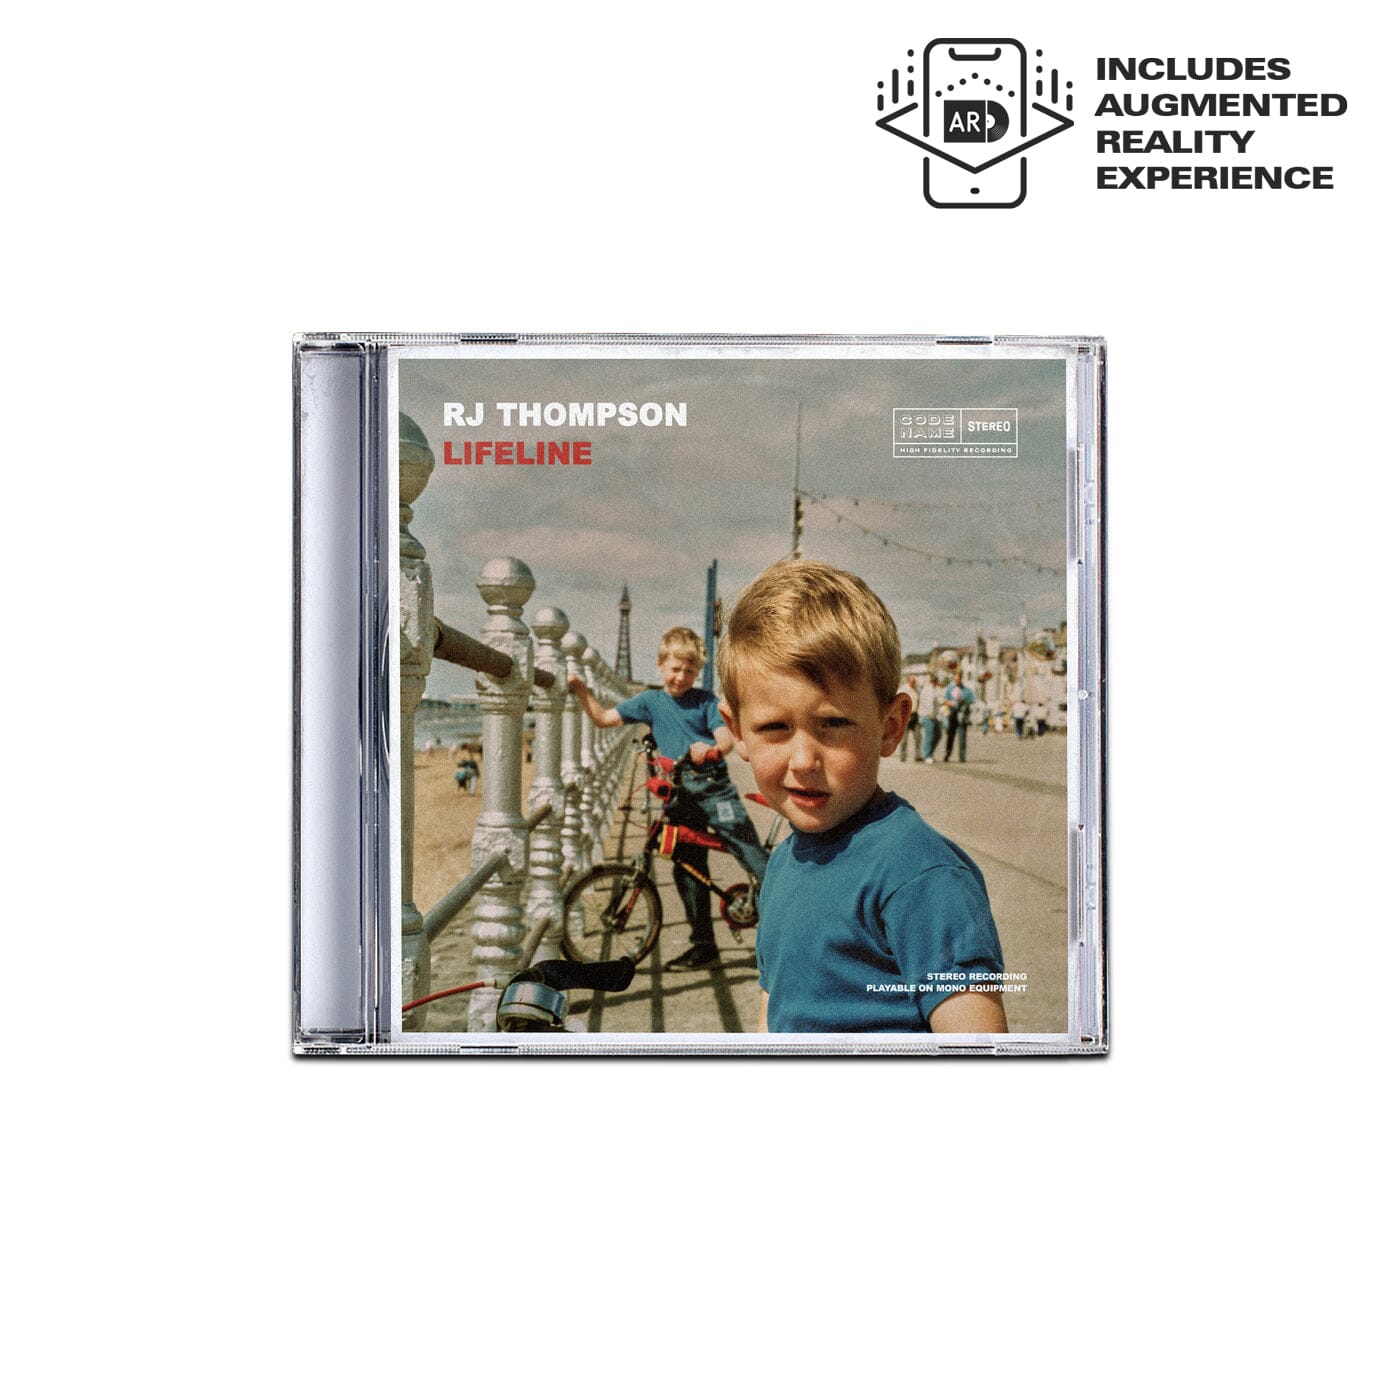 Lifeline - CD | RJ Thompson | Official Website & Store